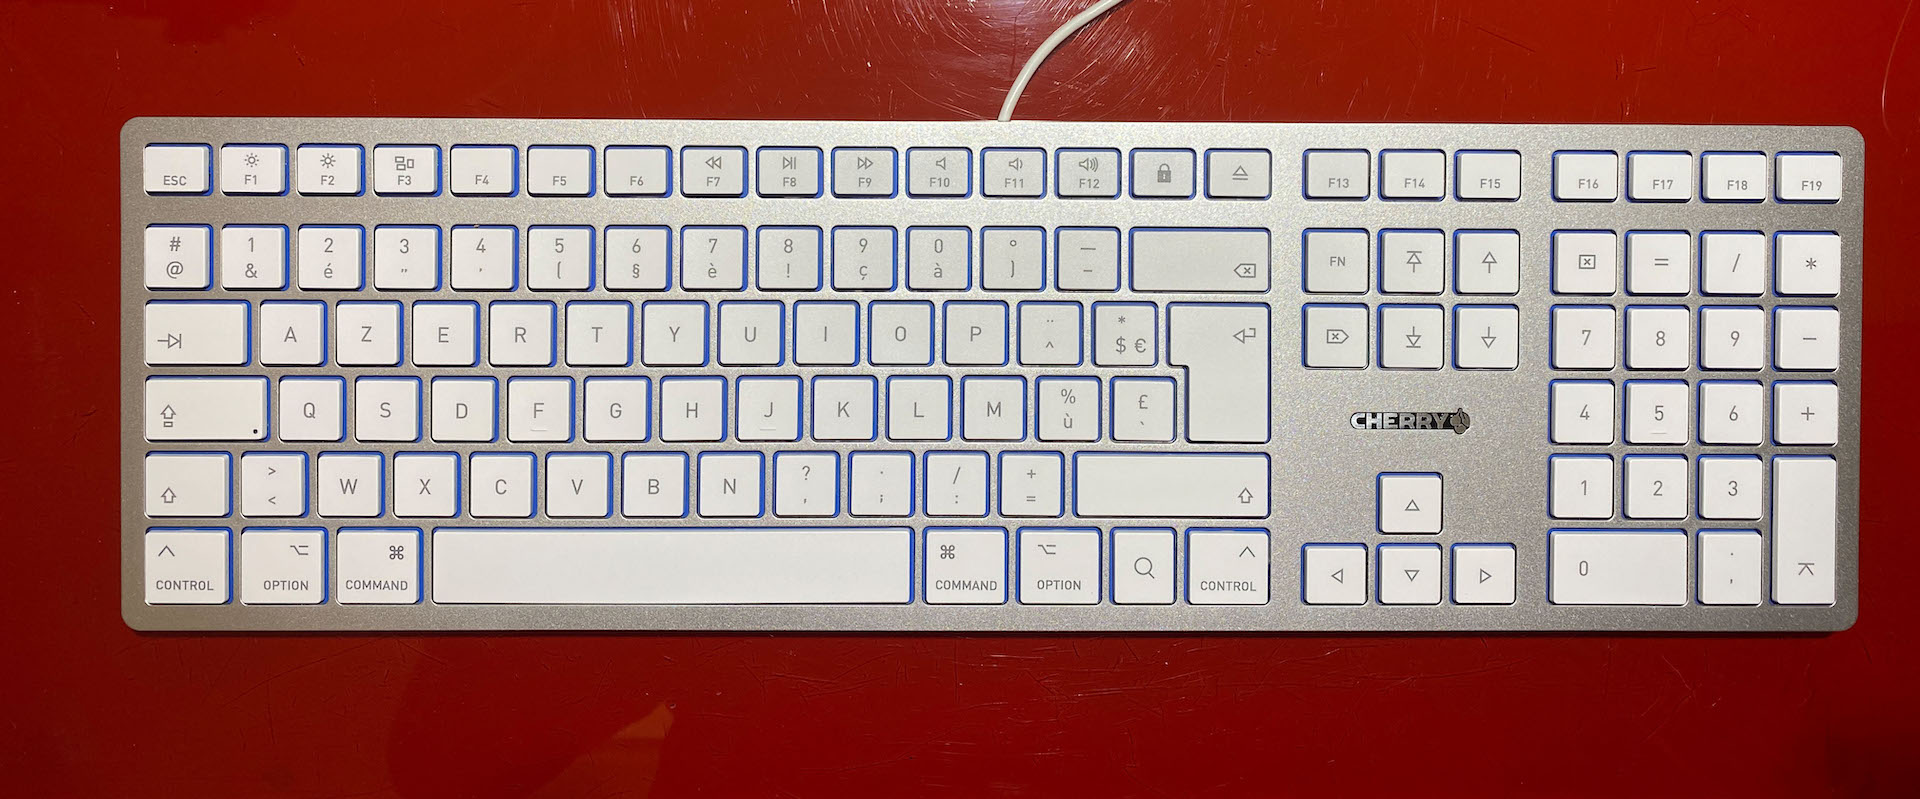 Quels sont les meilleurs claviers PC pour la bureautique ?